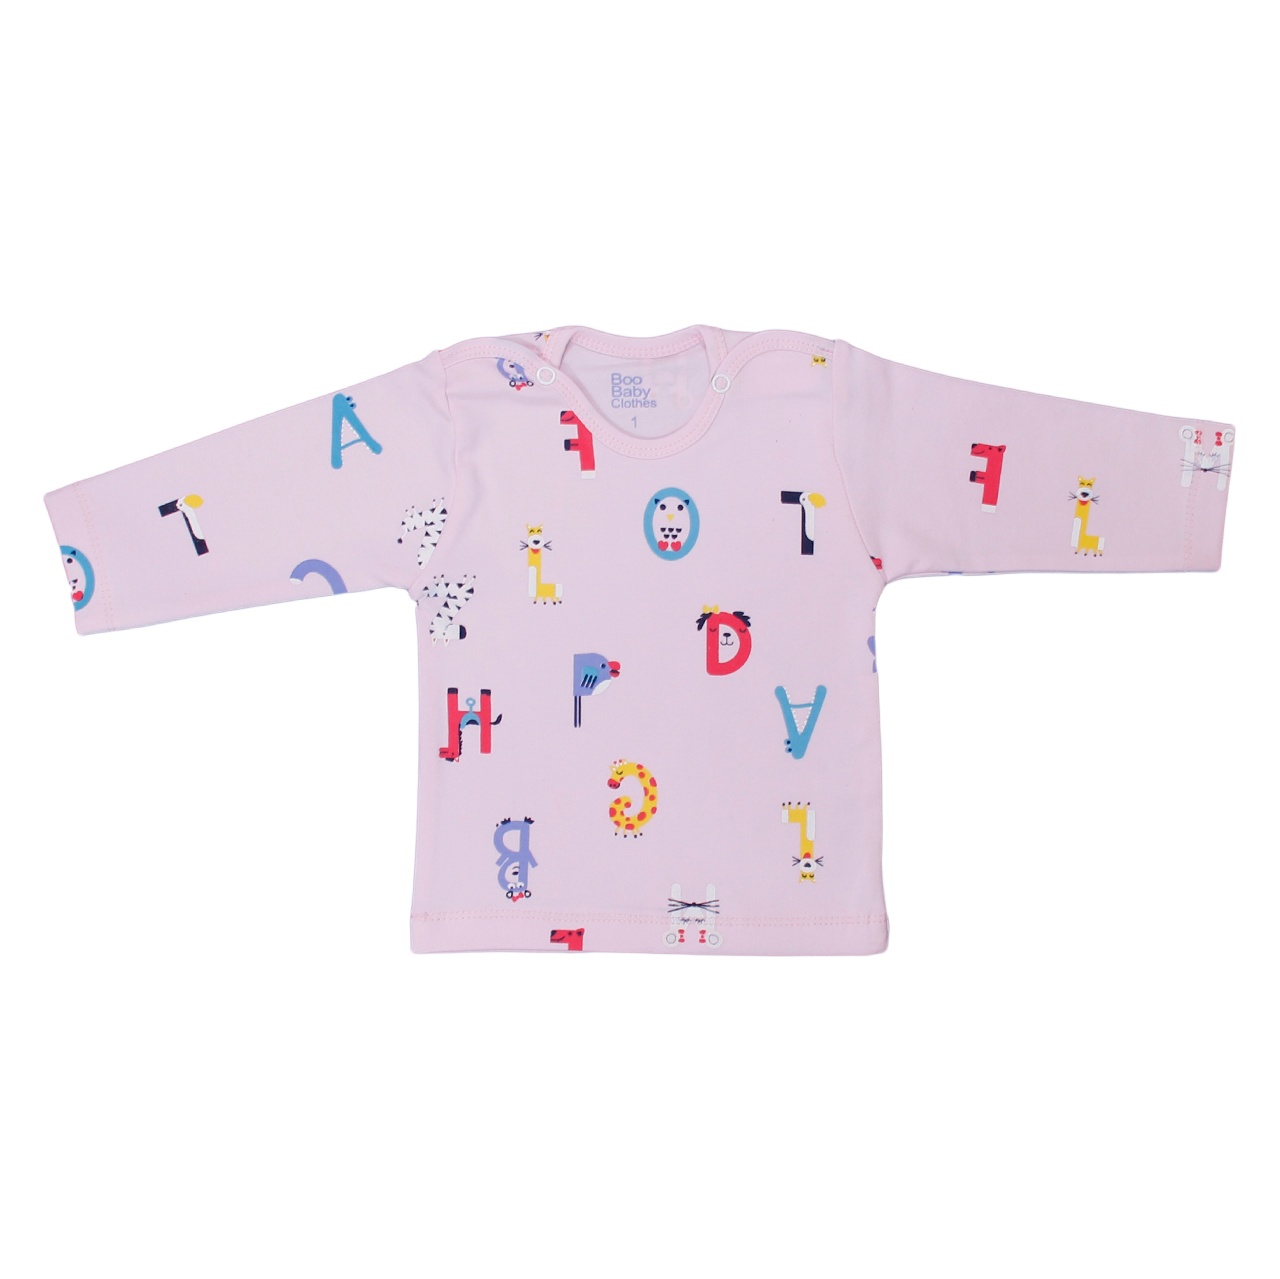 تی شرت آستین بلند نوزاد بیبی بو طرح alphabet